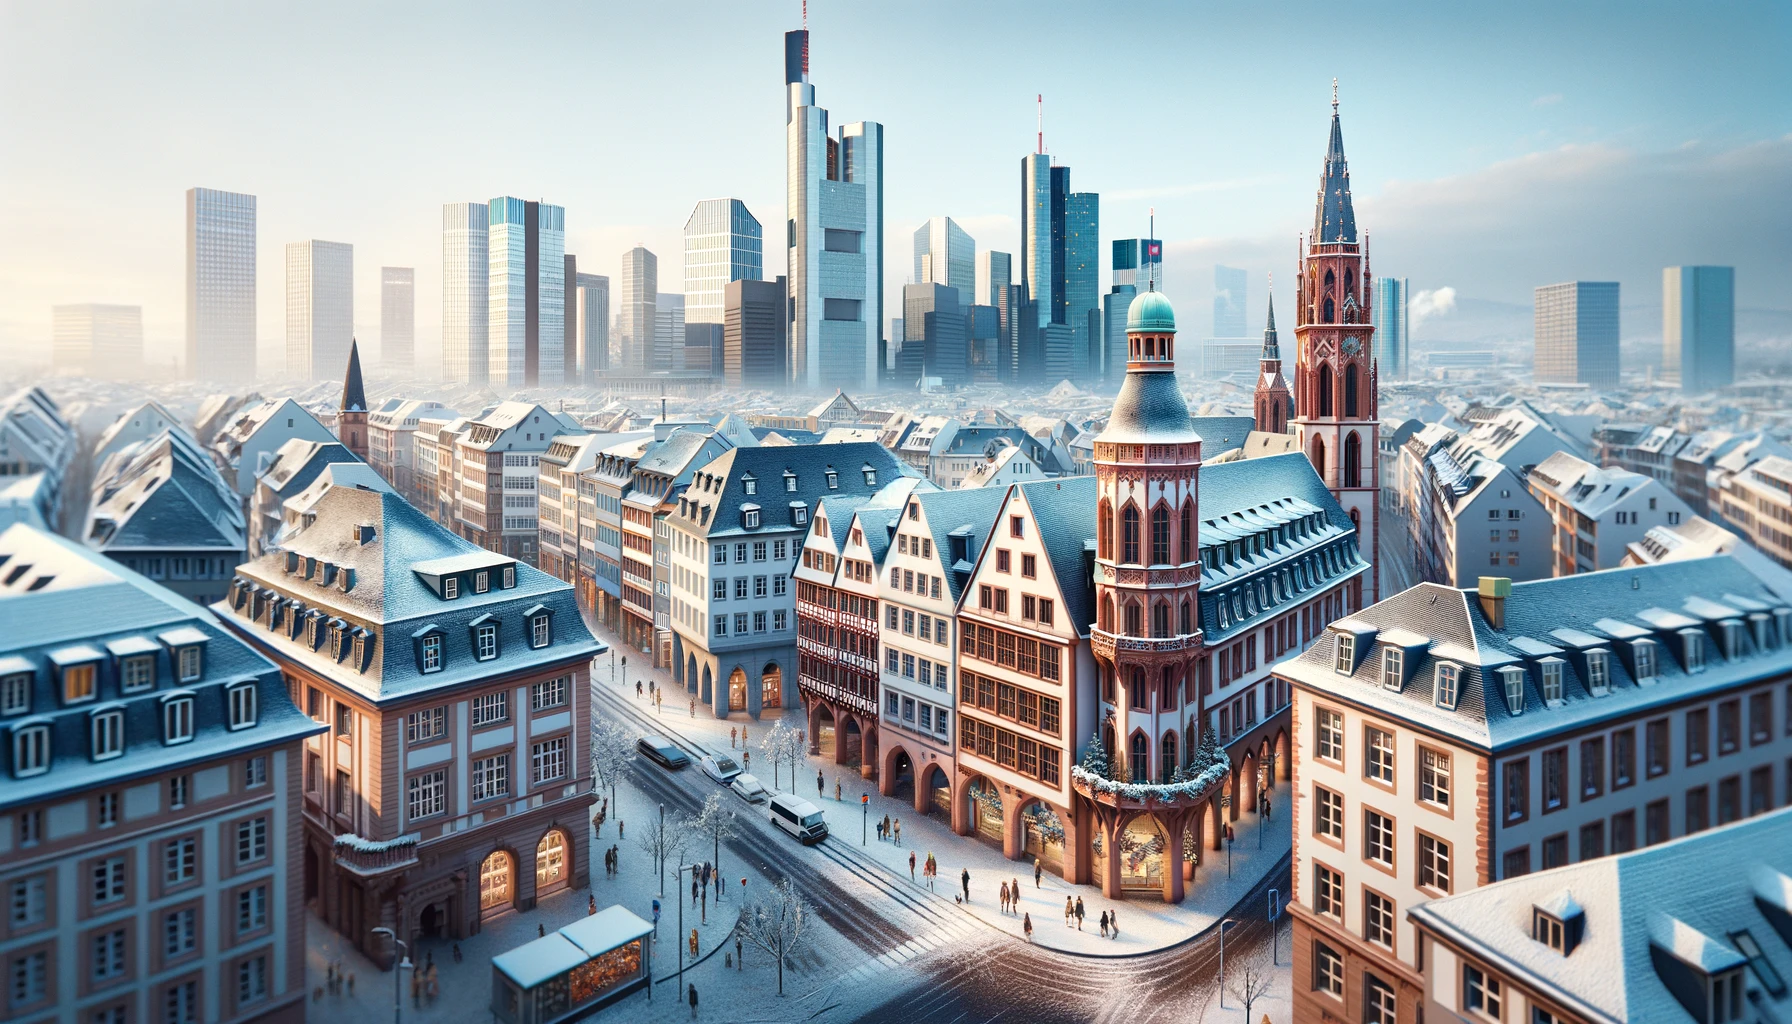 Zimowy widok na Frankfurt, pokazujący tradycyjną niemiecką architekturę i nowoczesne wieżowce.